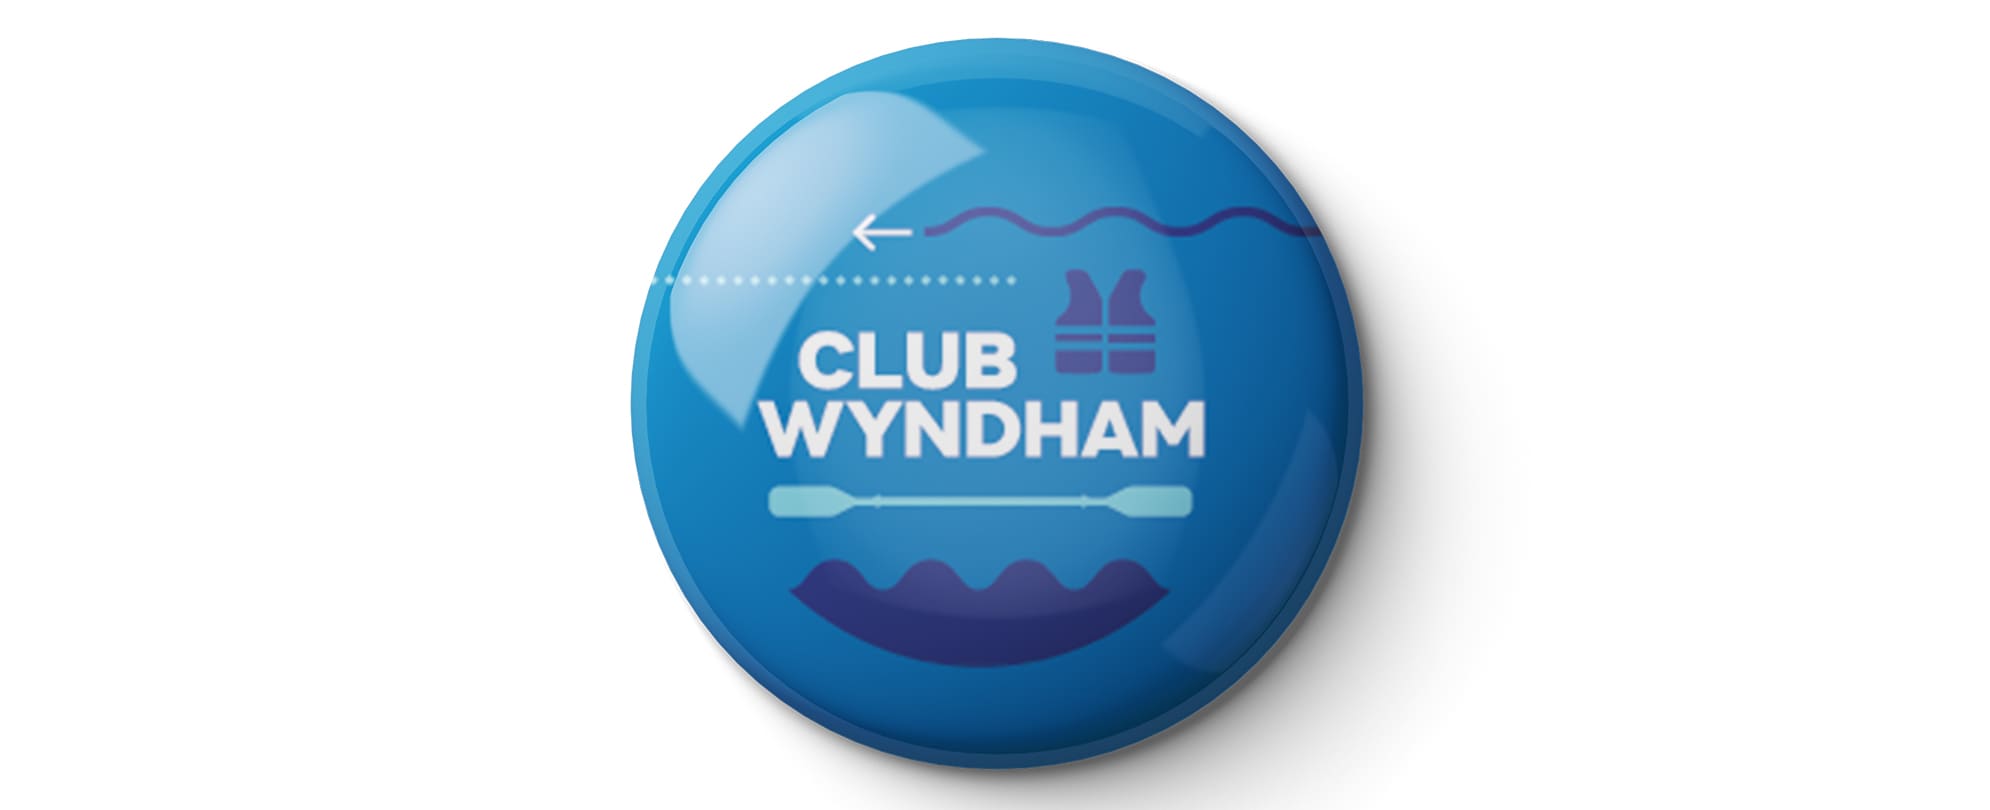 A blue Club Wyndham boating pin